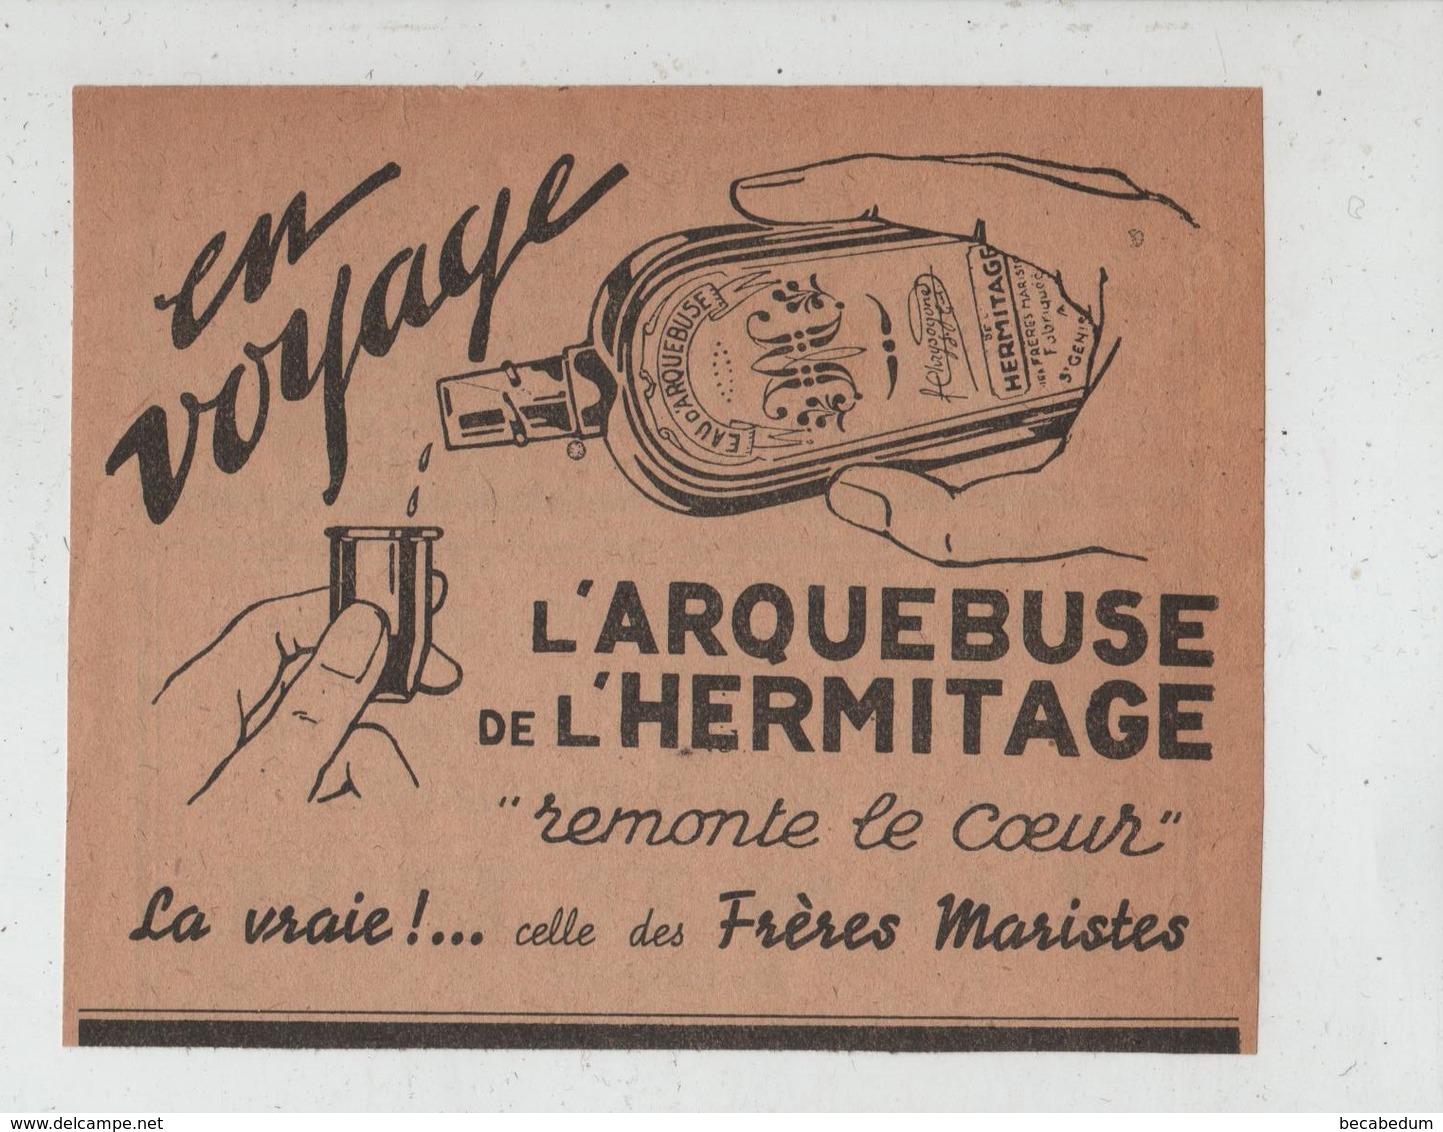 En Voyage L'Arquebuse De L'Hermitage Frères Maristes - Advertising